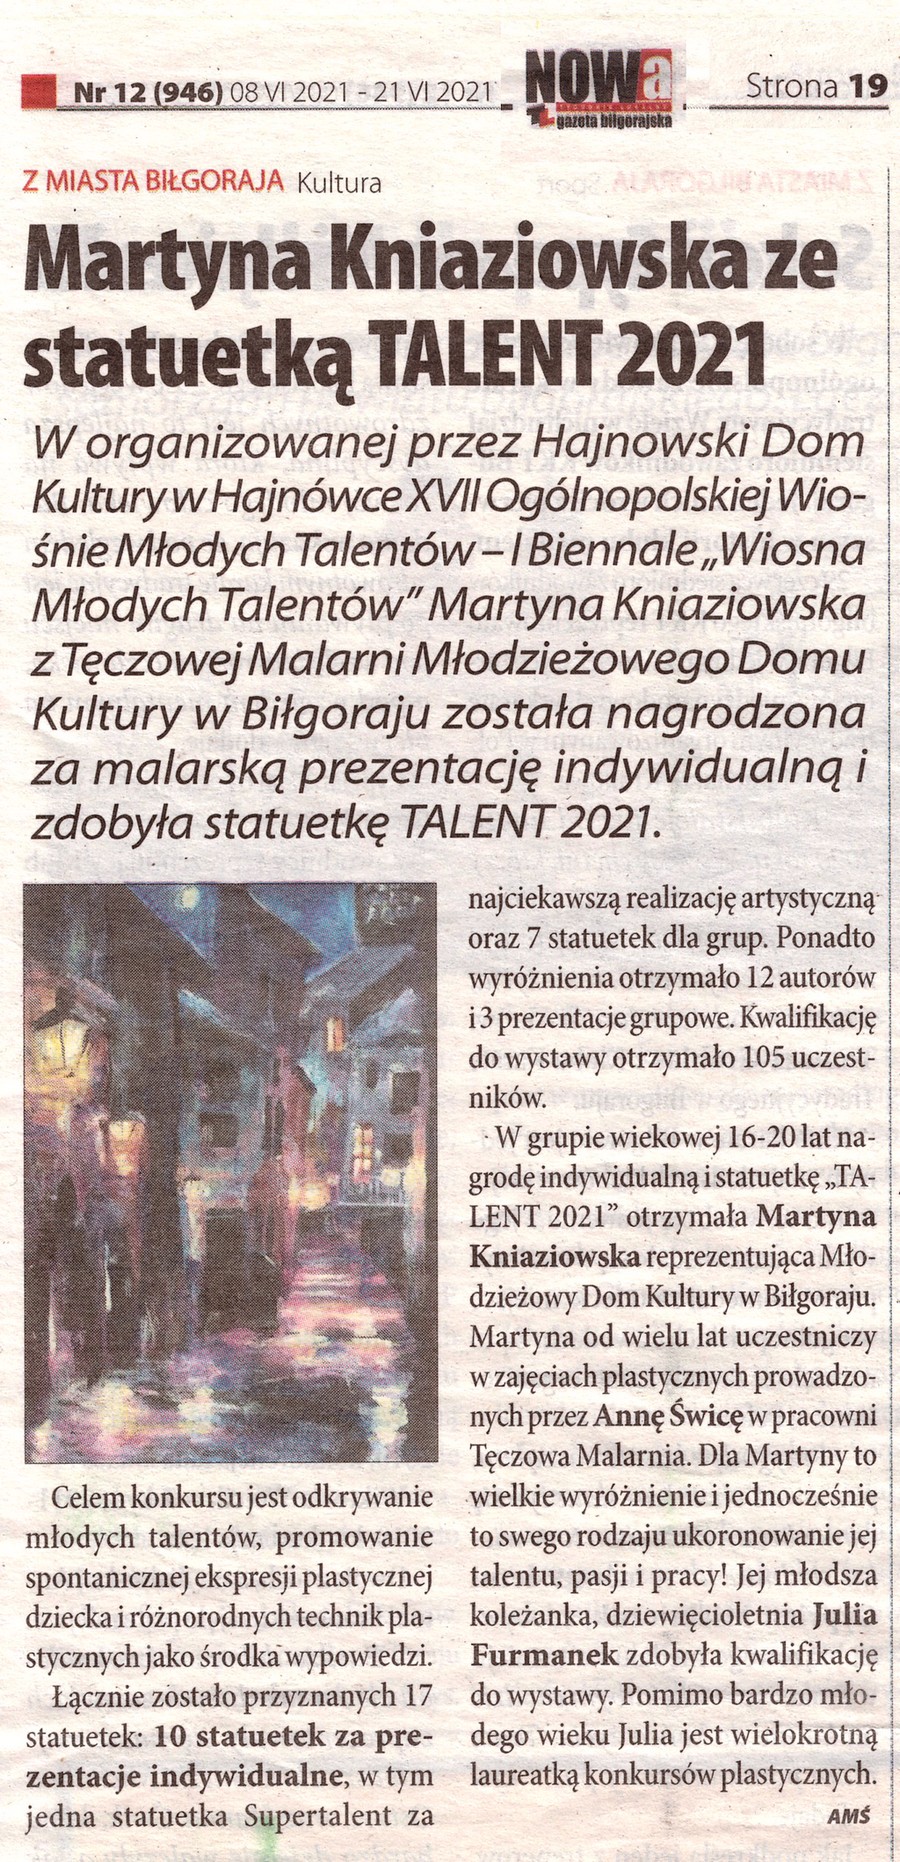 NOWA gazeta bigorajska - w artykule przeczytasz o sukcesie Martyny Kniaziowskiej w konkursie plastycznym